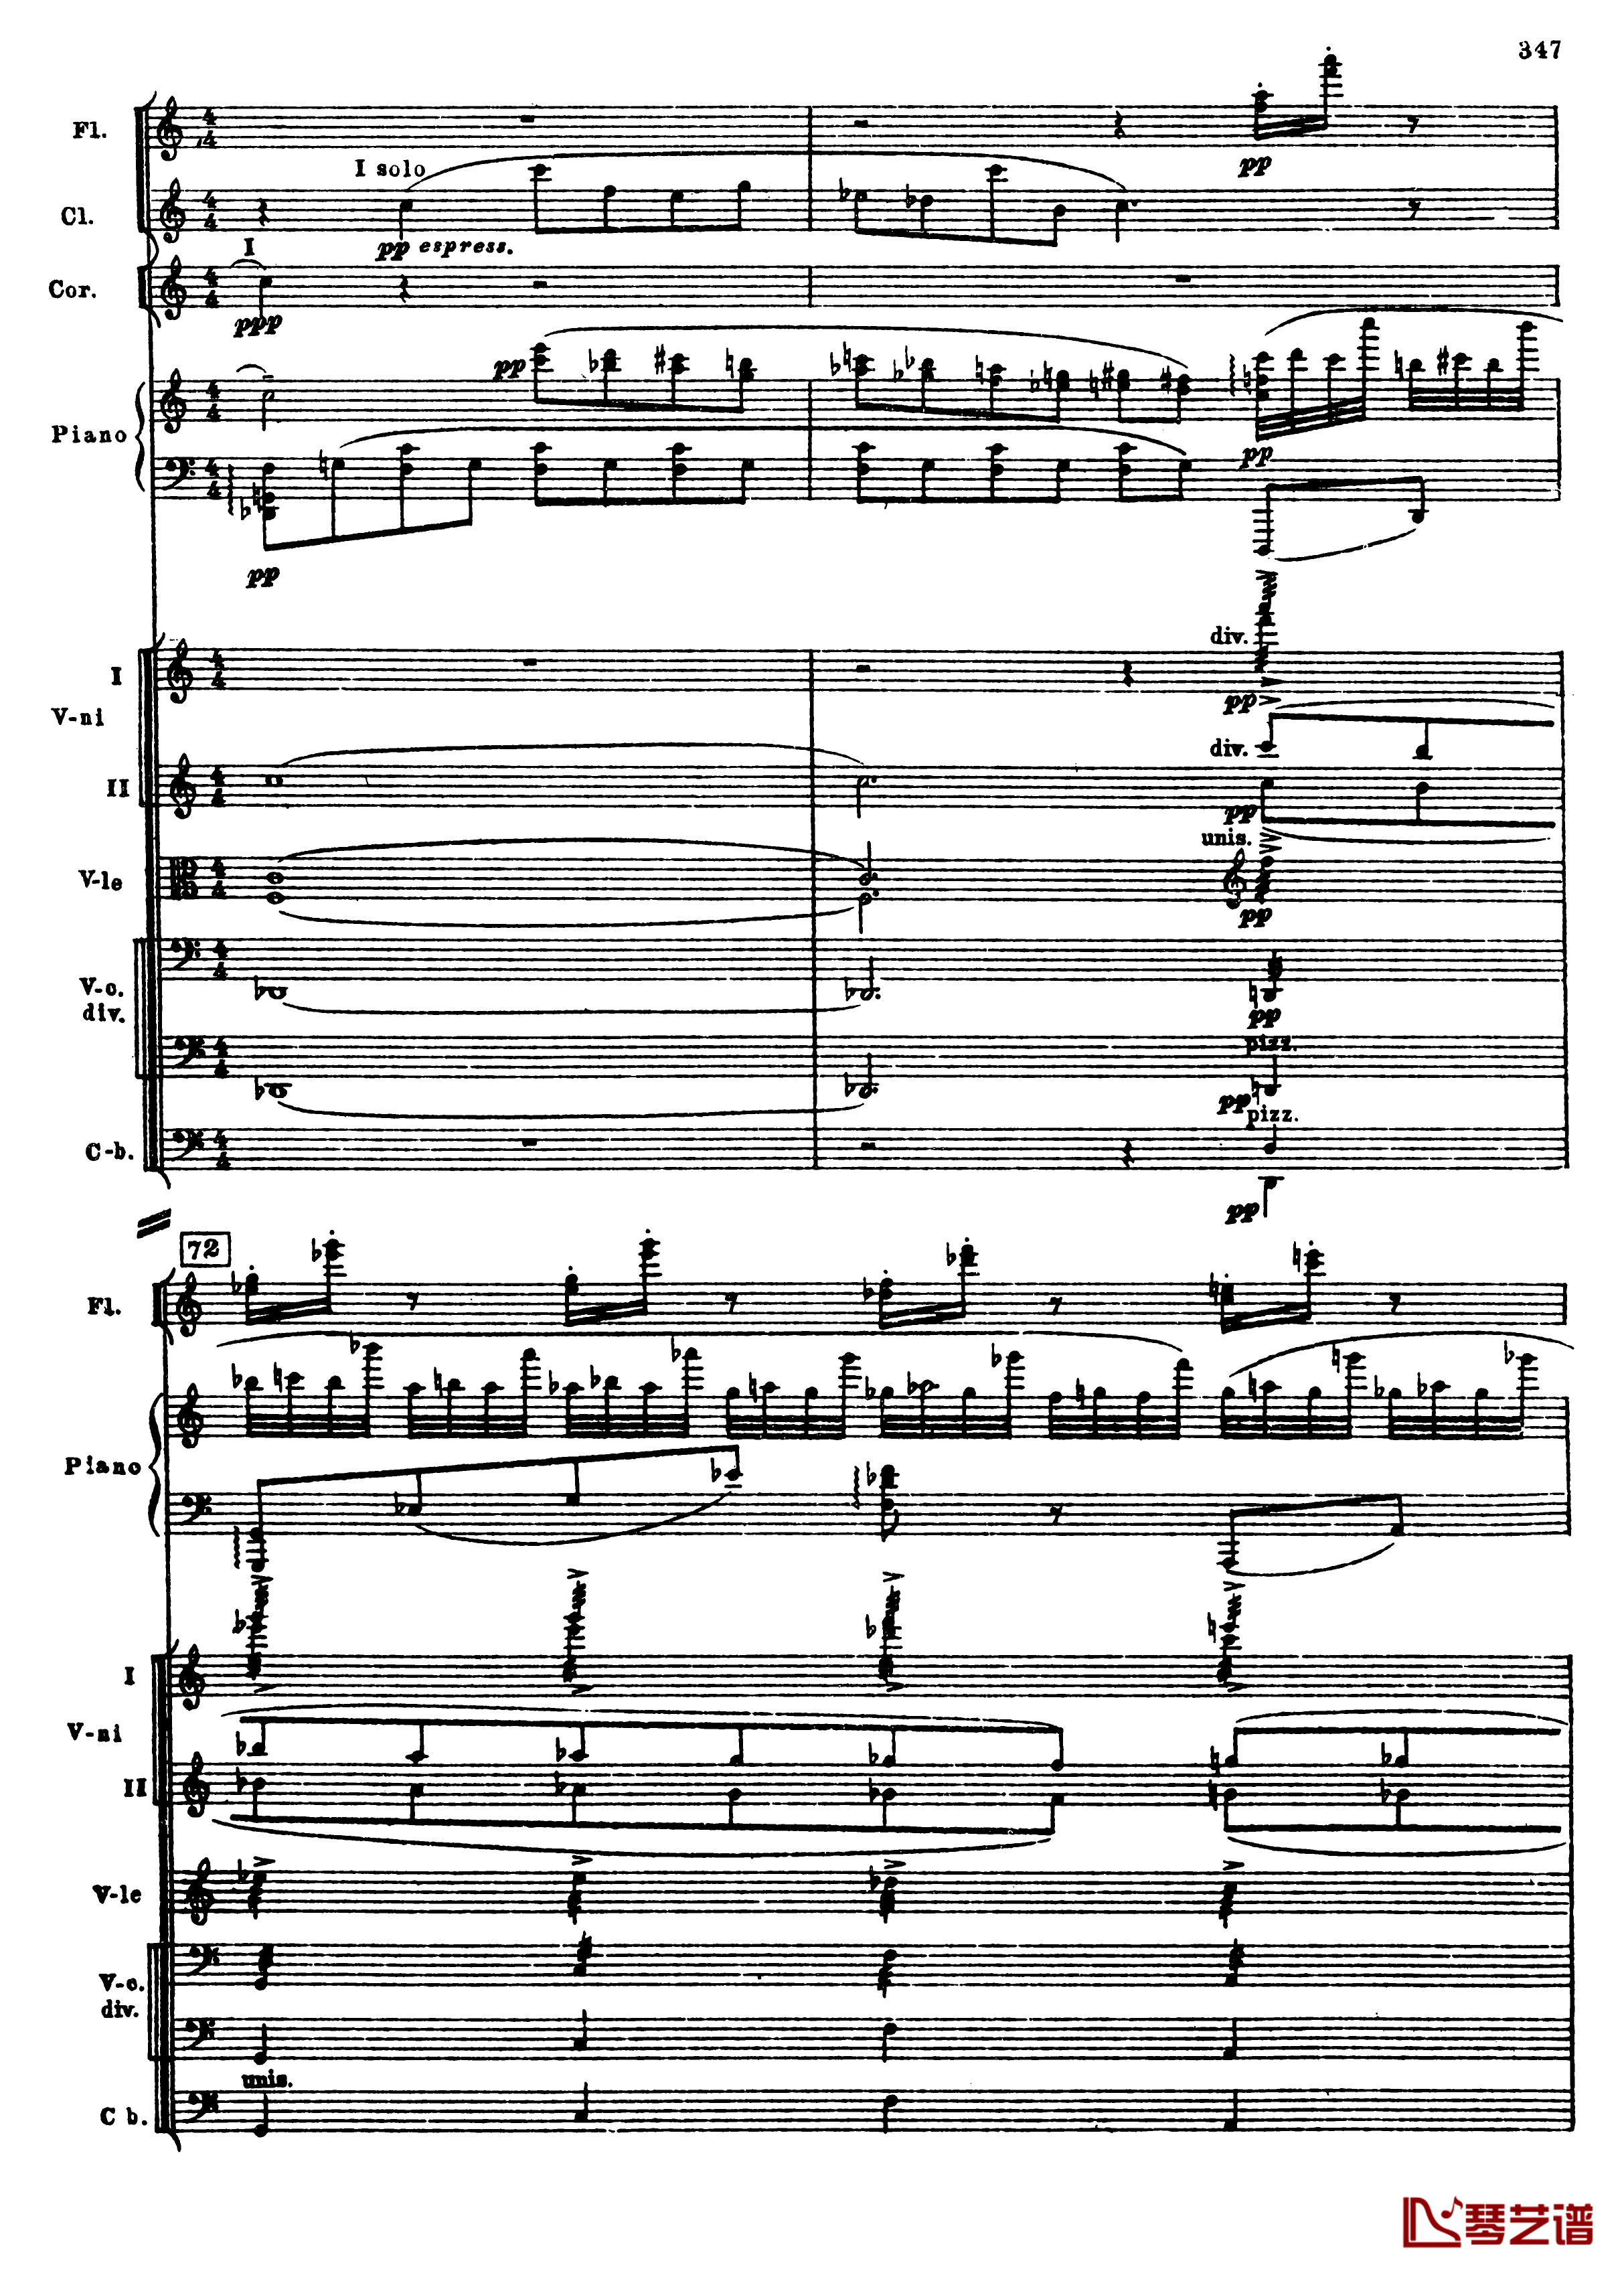 普罗科菲耶夫第三钢琴协奏曲钢琴谱-总谱-普罗科非耶夫79